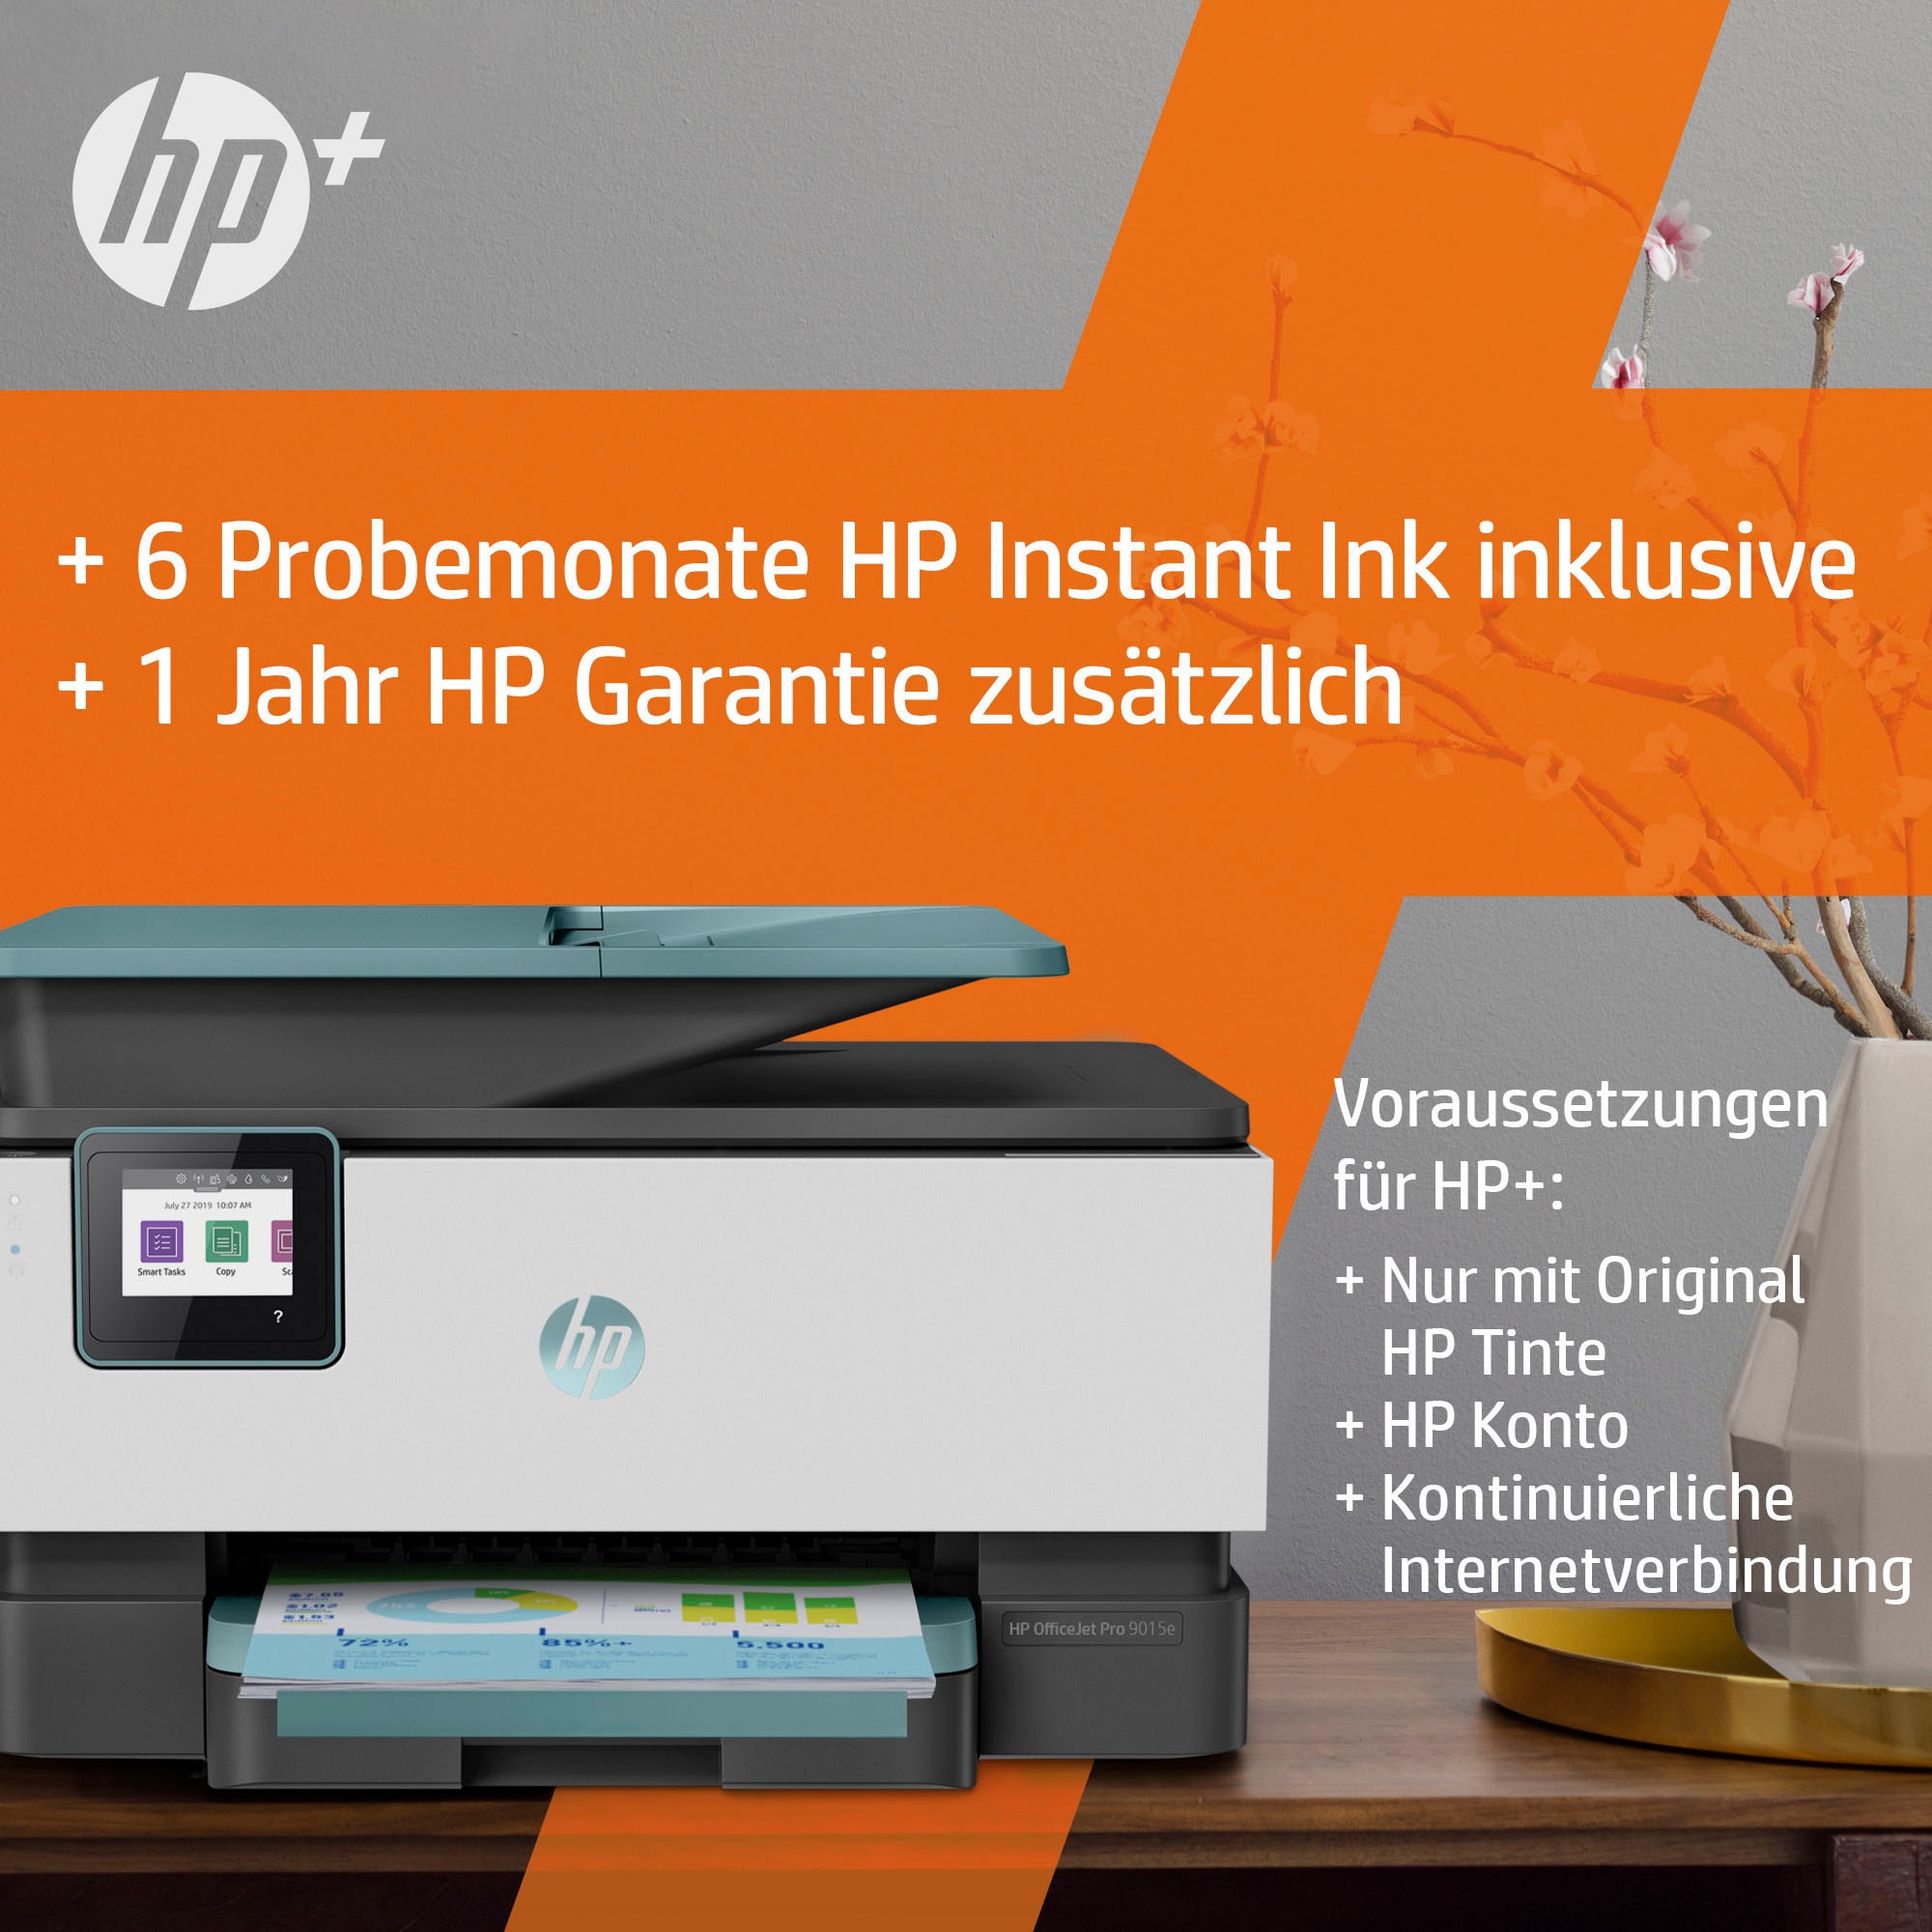 HP Multifunktionsdrucker »OfficeJet Pro 9015e Instant OTTO Ink bestellen bei HP+ kompatibel All-in-One«